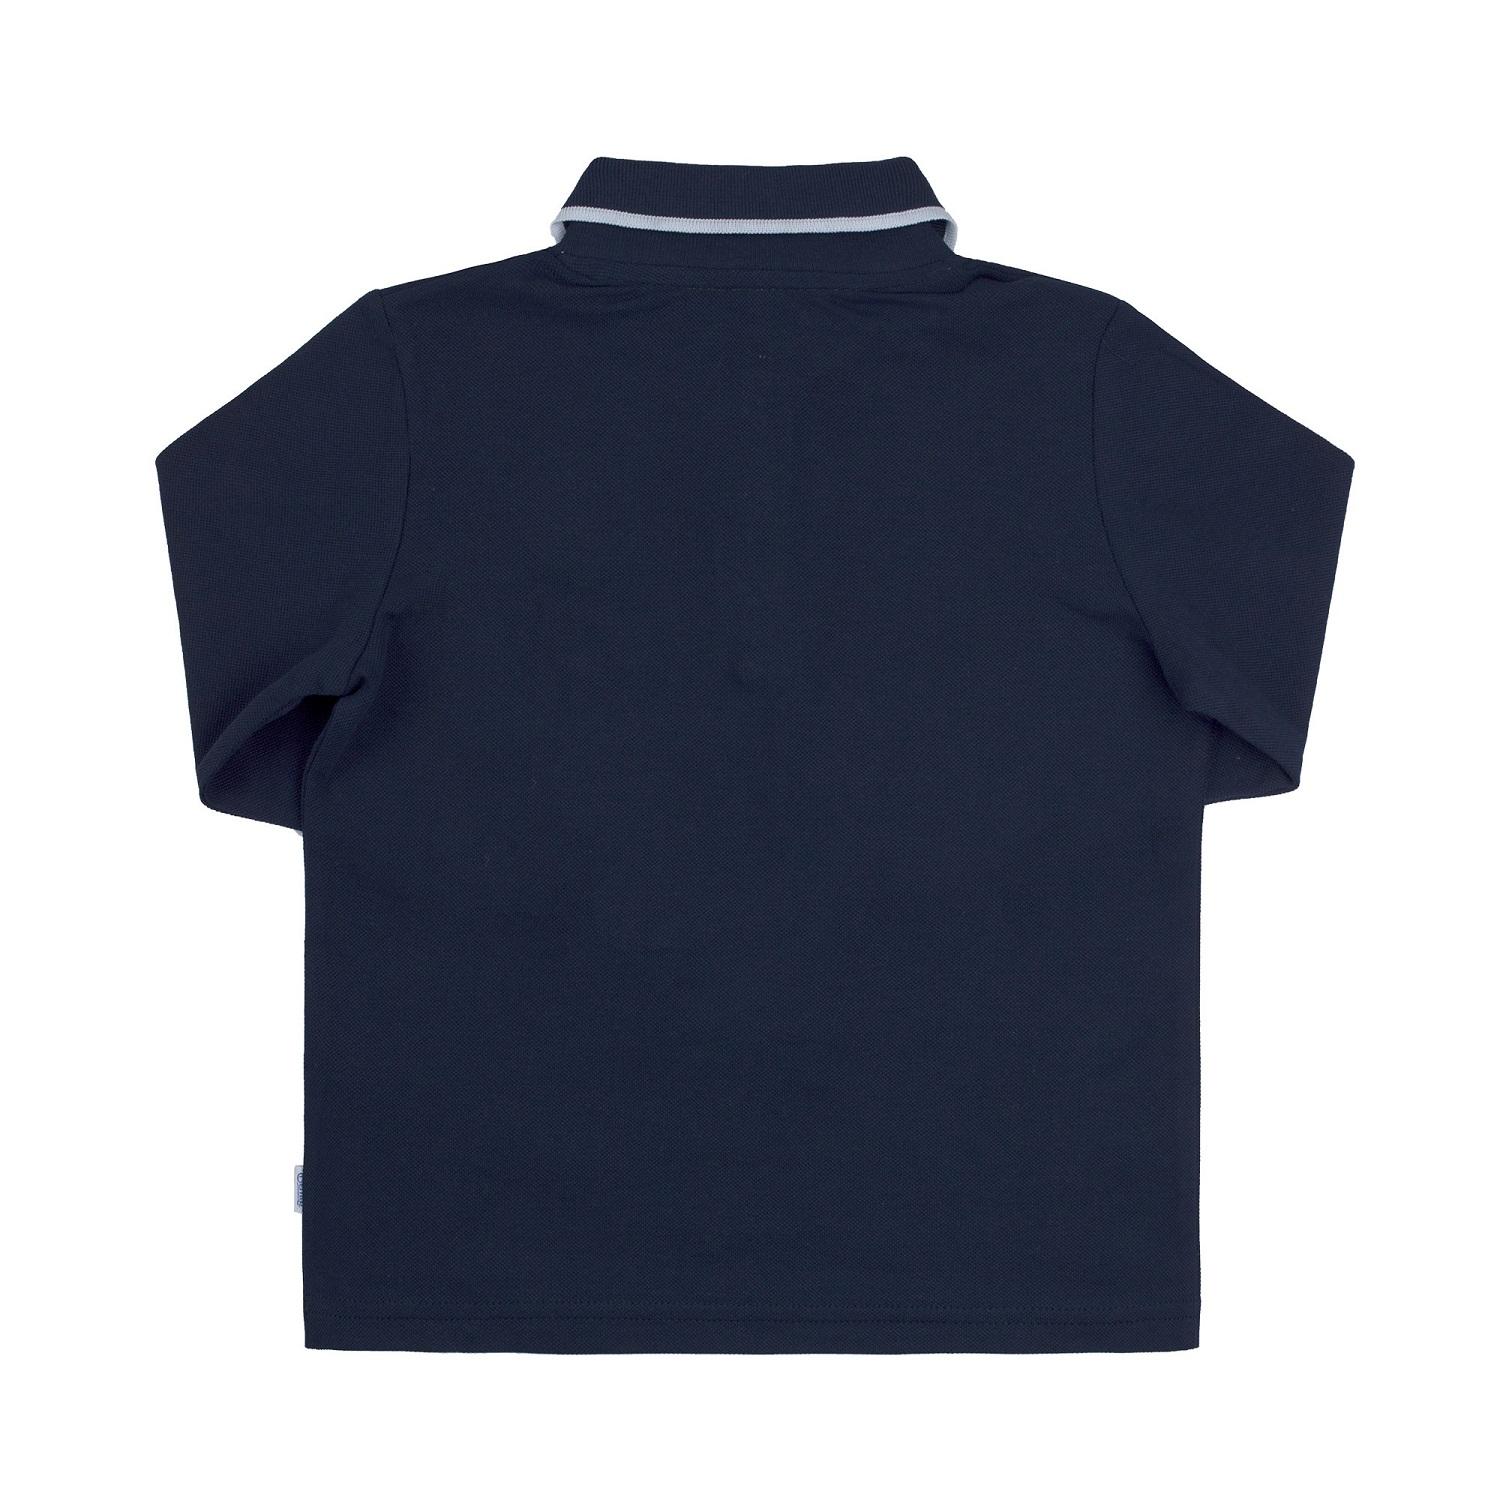 Детская футболка-поло с длинным рукавом для мальчика, темно-синяя (ФБ757), Бемби